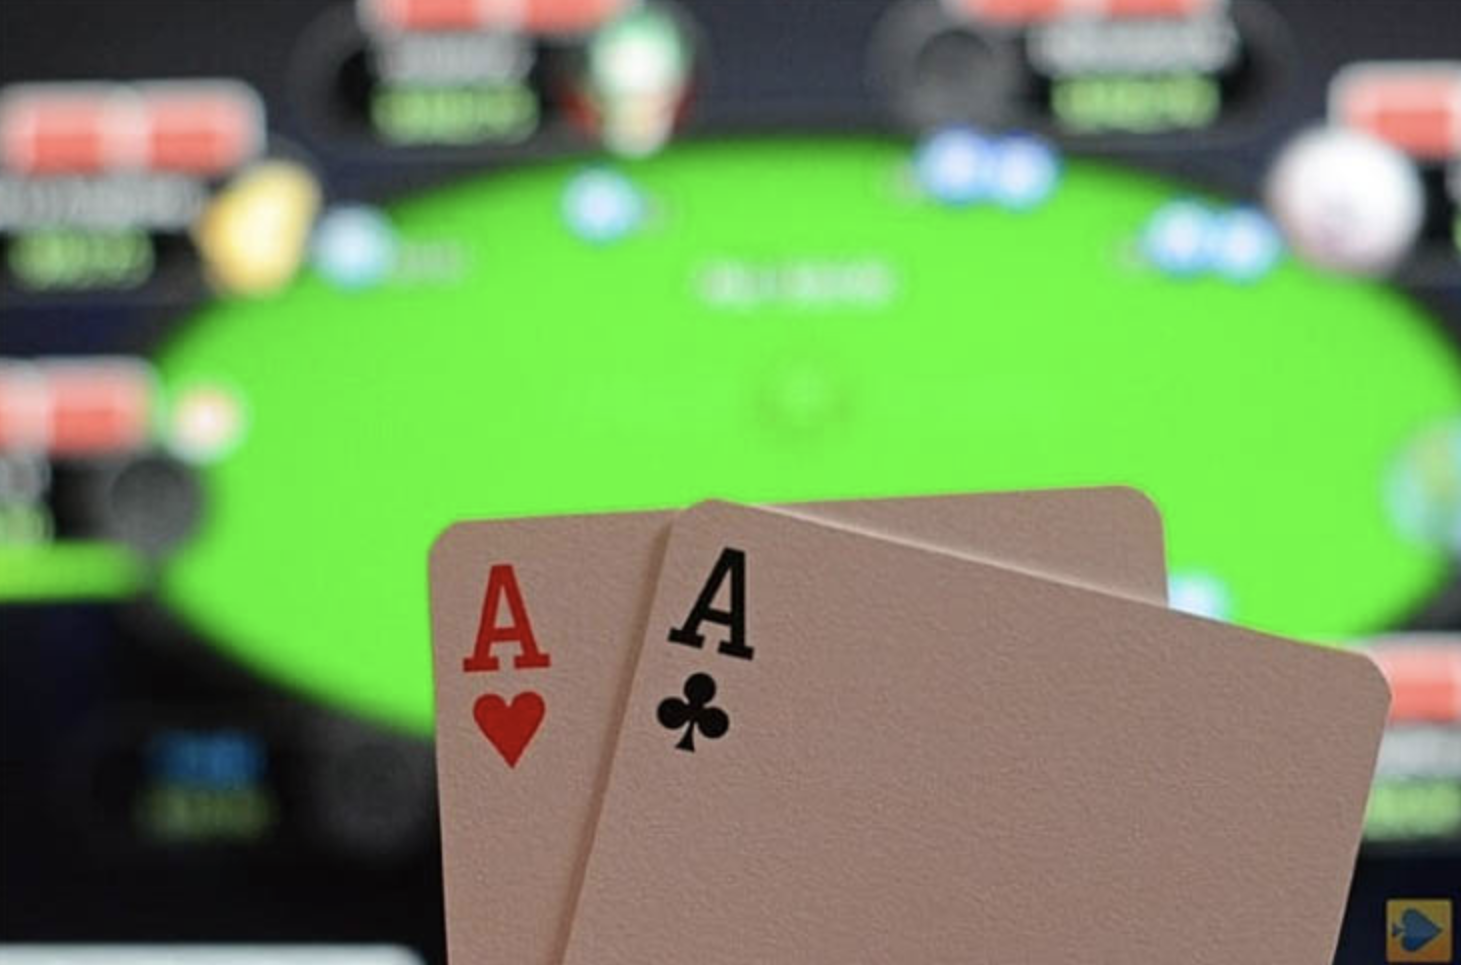 Покер онлайн на реальные деньги с выводом денег смотреть онлайн в хорошем качестве фильм казино